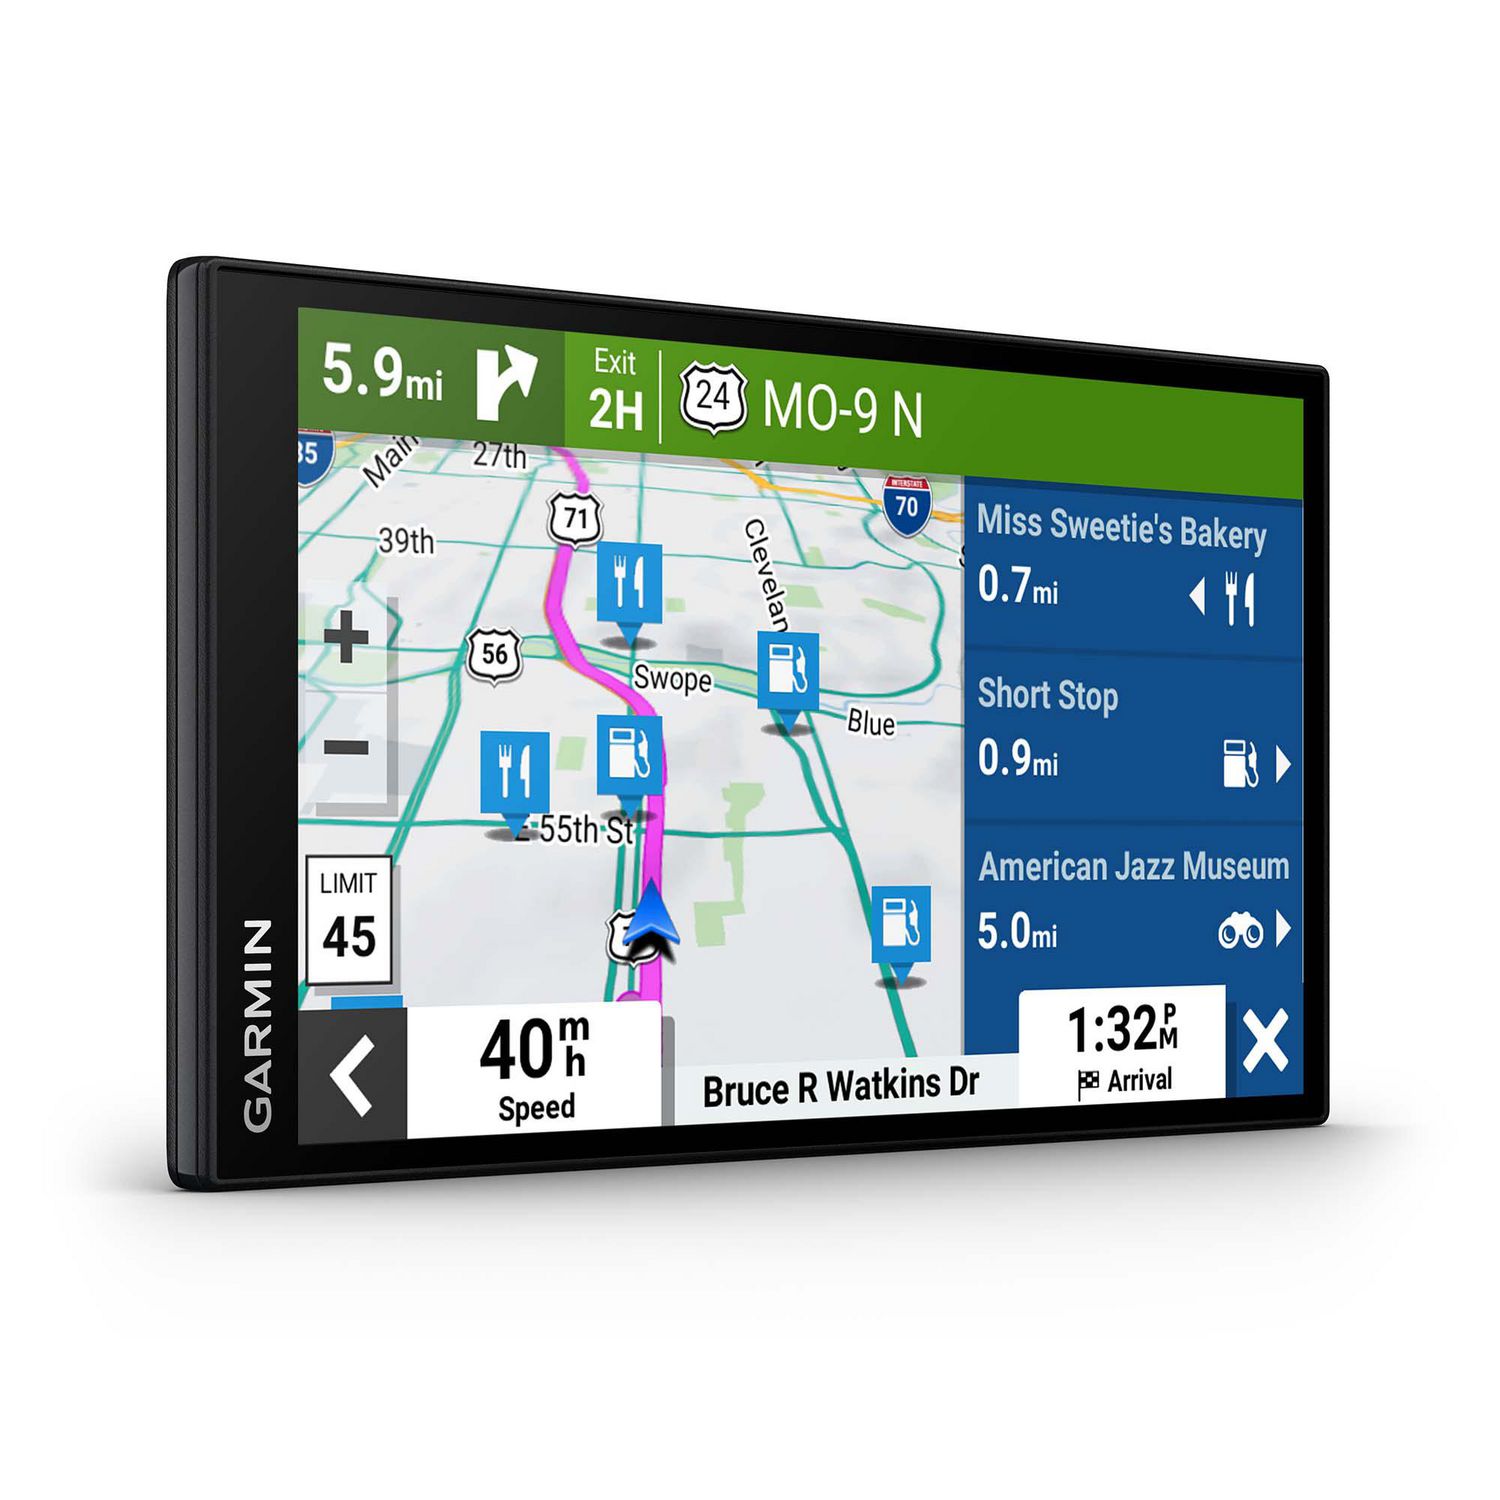 fløjl Tal højt naturlig Garmin DriveSmart 76 MT GPS with 7.0-in Display Featuring Traffic Alerts -  Black | Walmart Canada